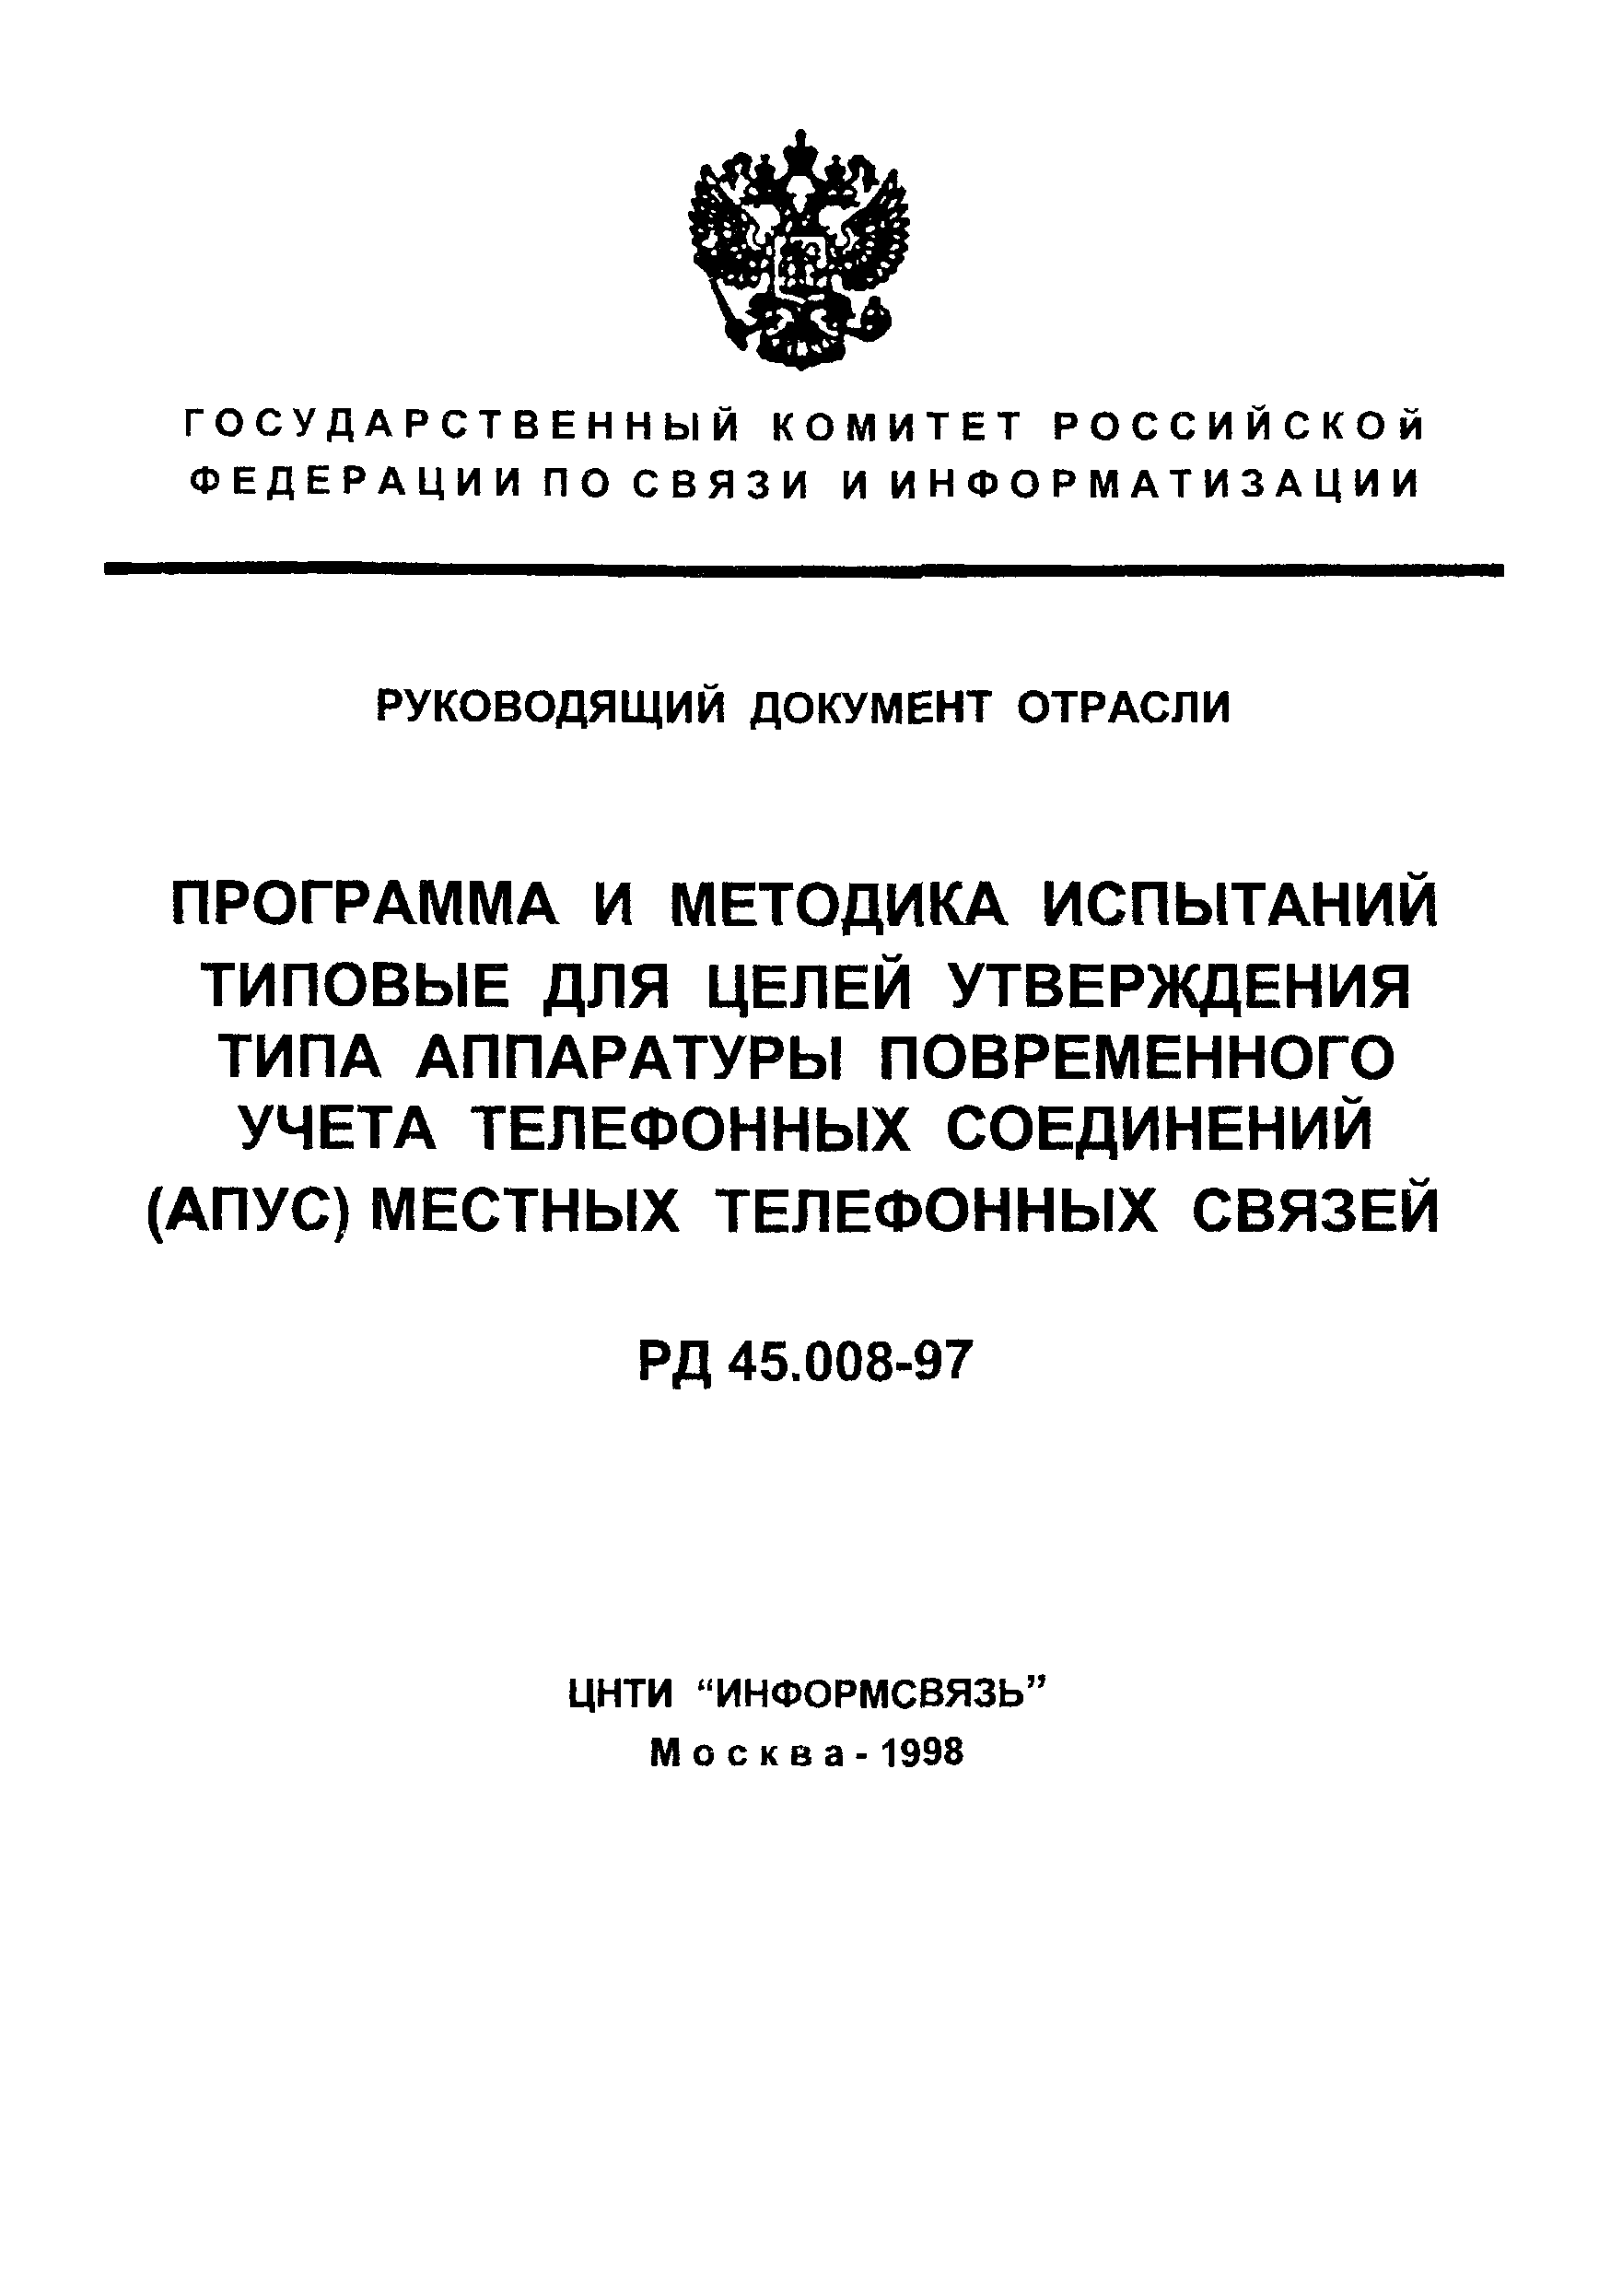 РД 45.008-97